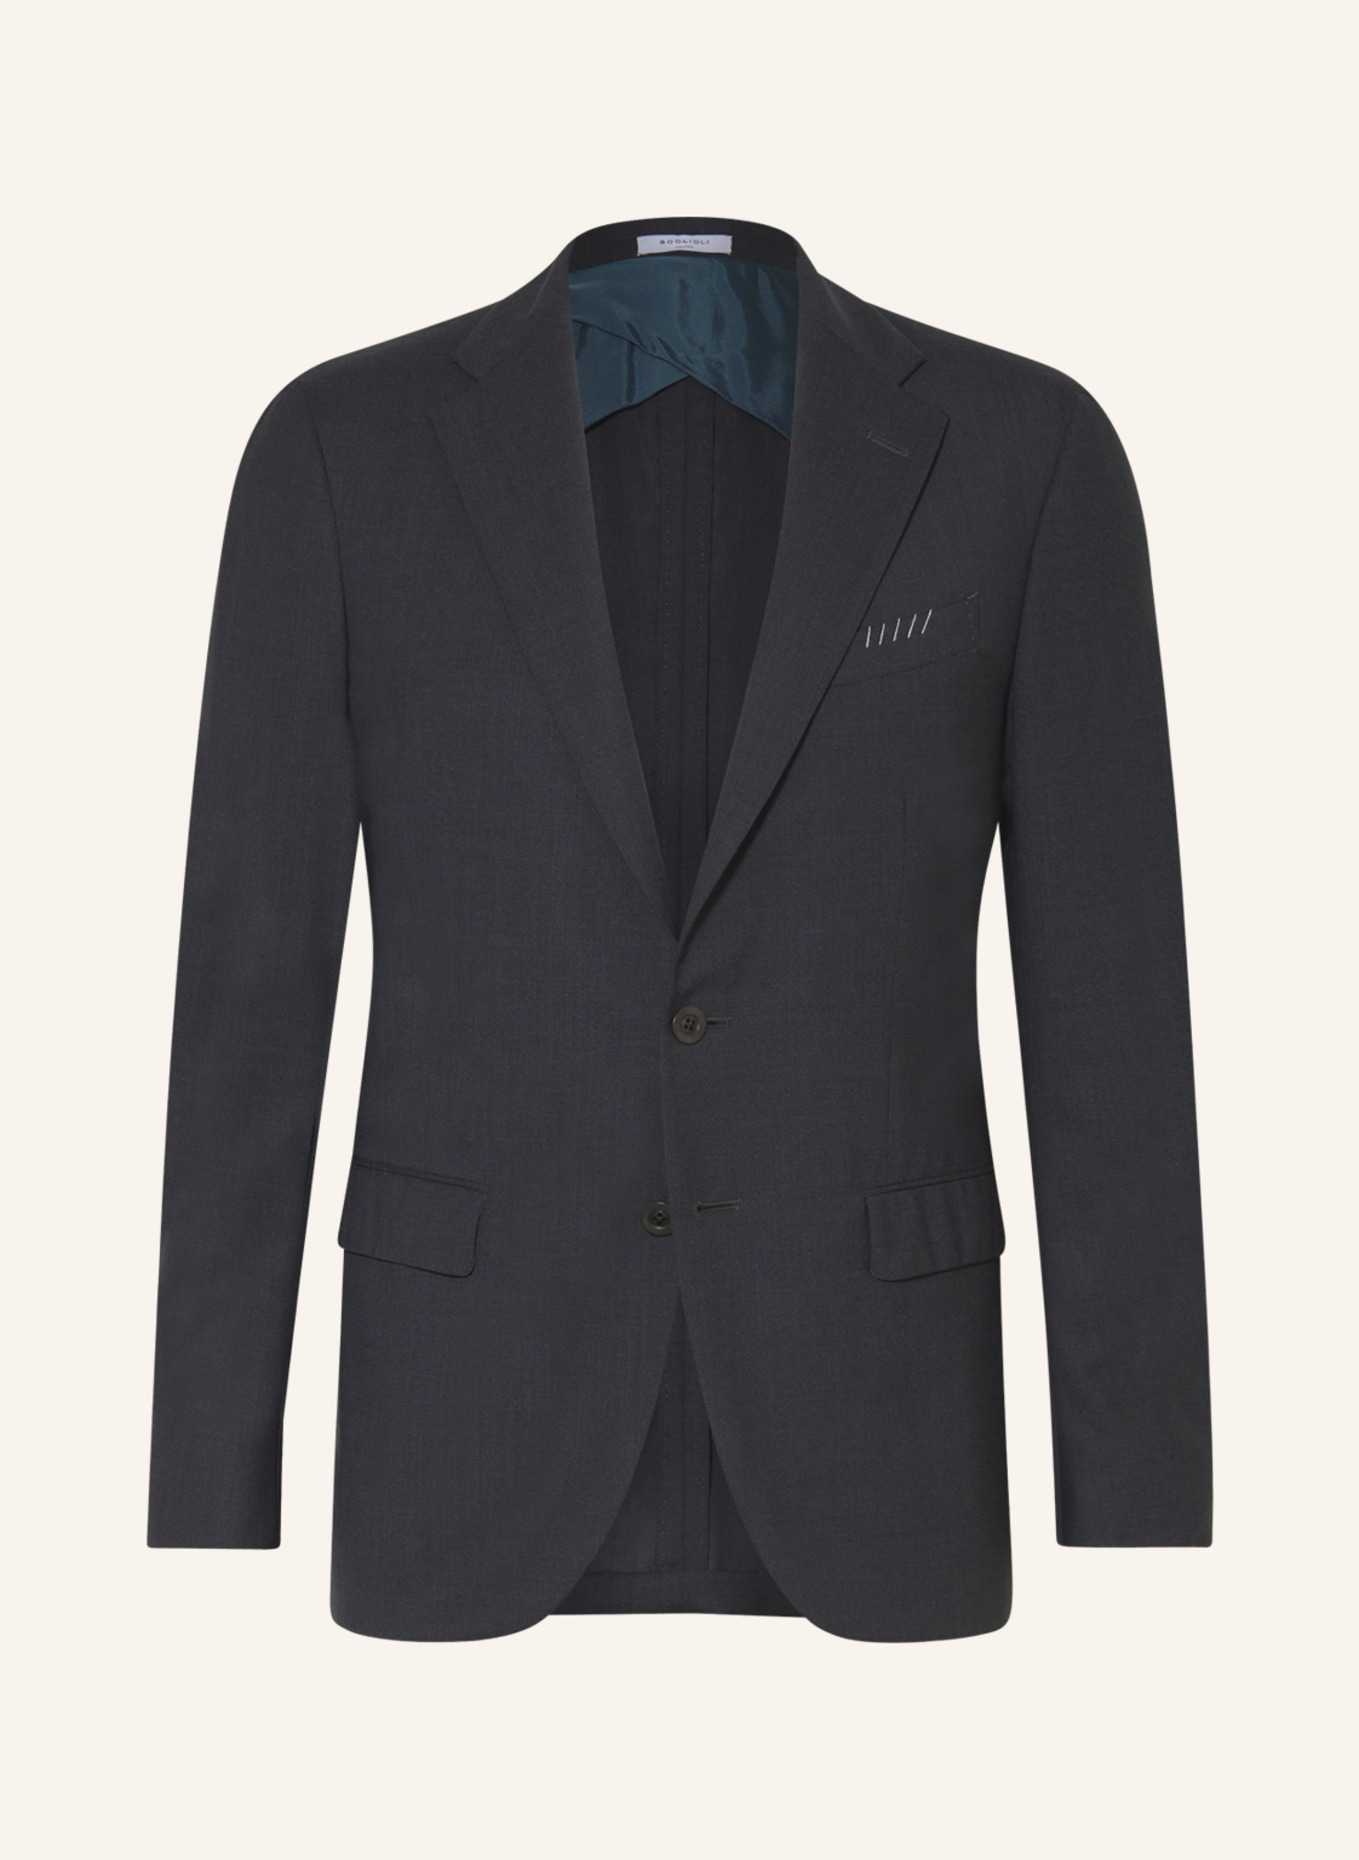 BOGLIOLI Suit jacket extra slim fit, Color: 890 Anthra (Image 1)